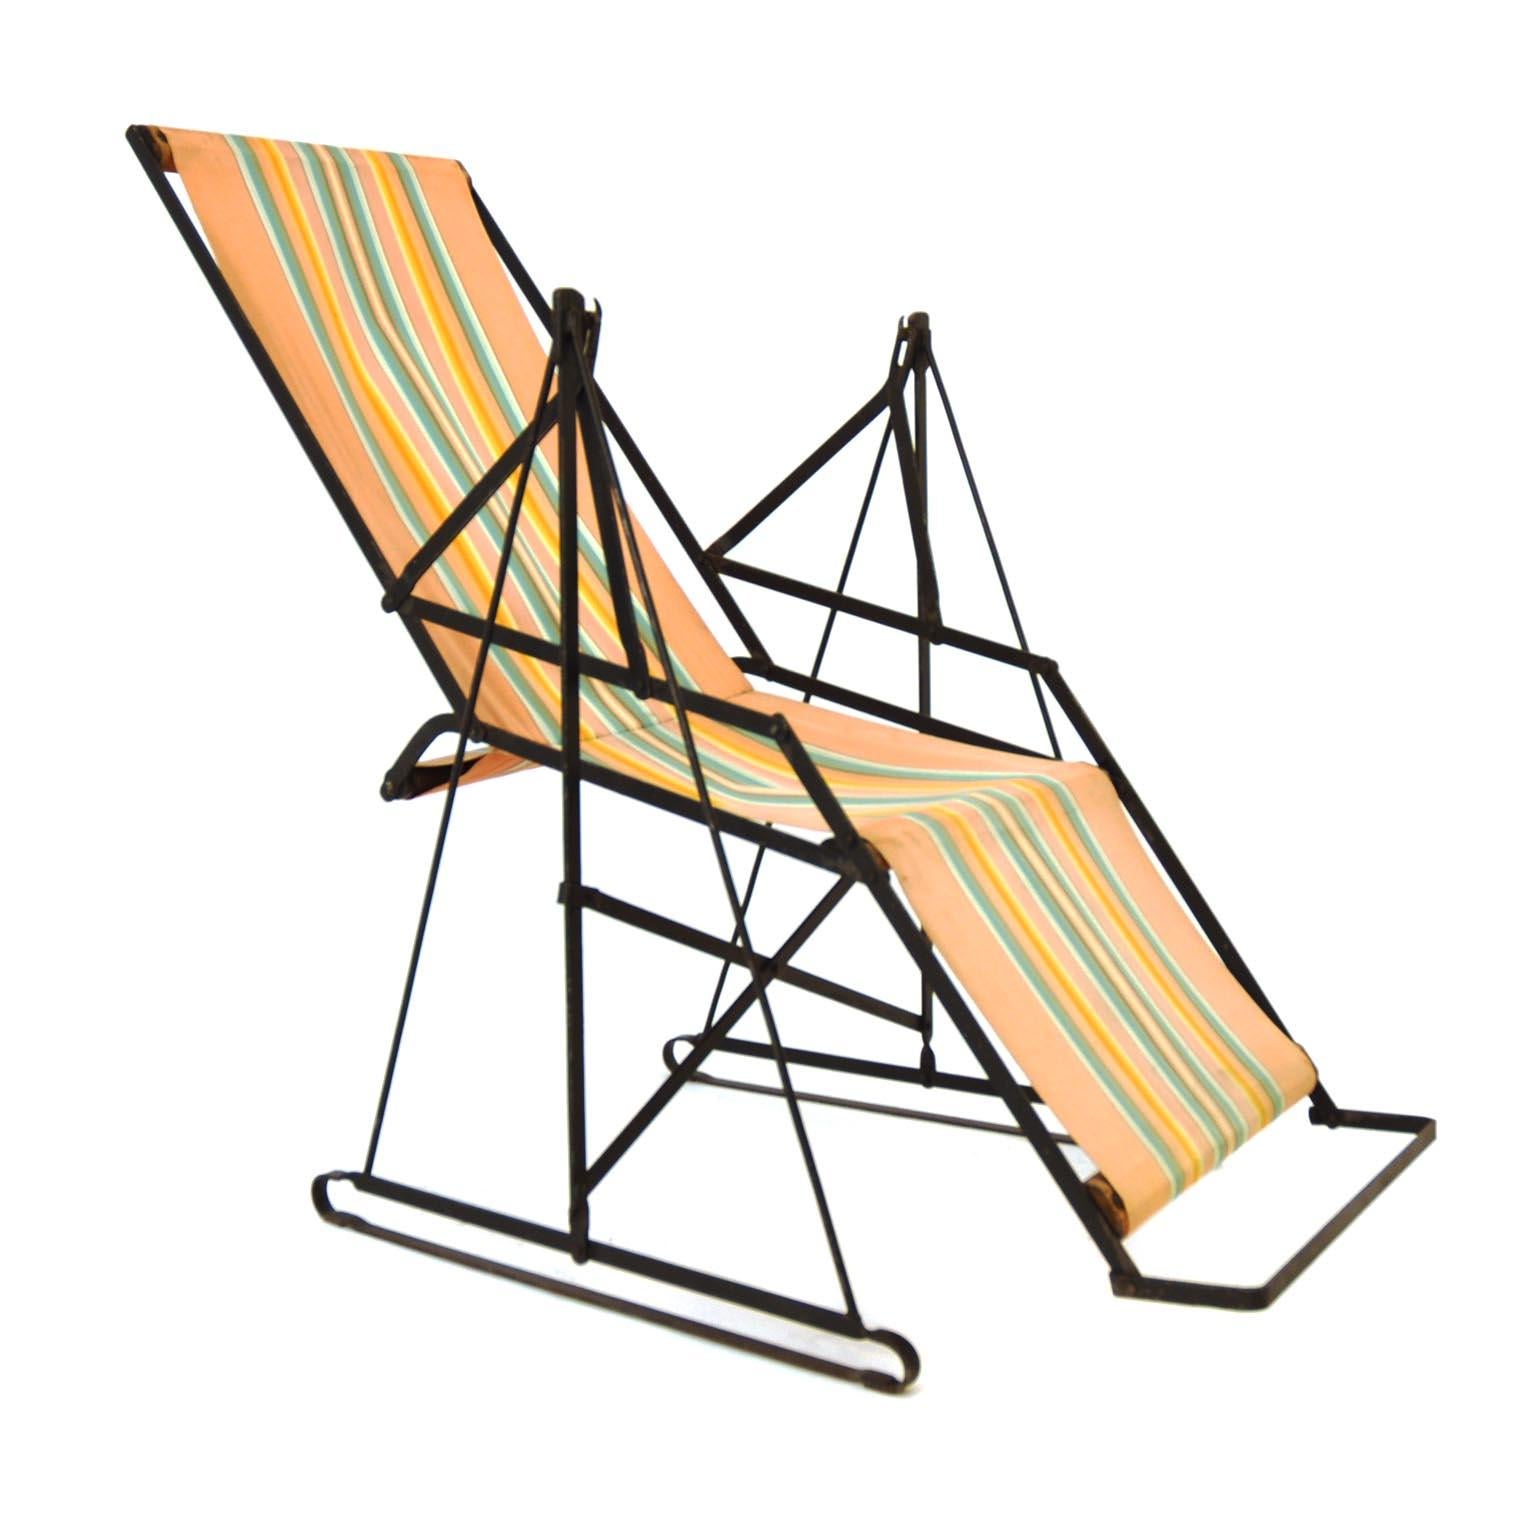 Ein tolles Stück für Ihre Stuhlsammlung:
Dieser Sonnenstuhl wurde 1930 von Metz & Co. in Holland hergestellt. Der Metallsockel ist im Originalzustand, aber wir glauben, dass der Stoff in den 1950er Jahren erneuert wurde.
Es ist wirklich